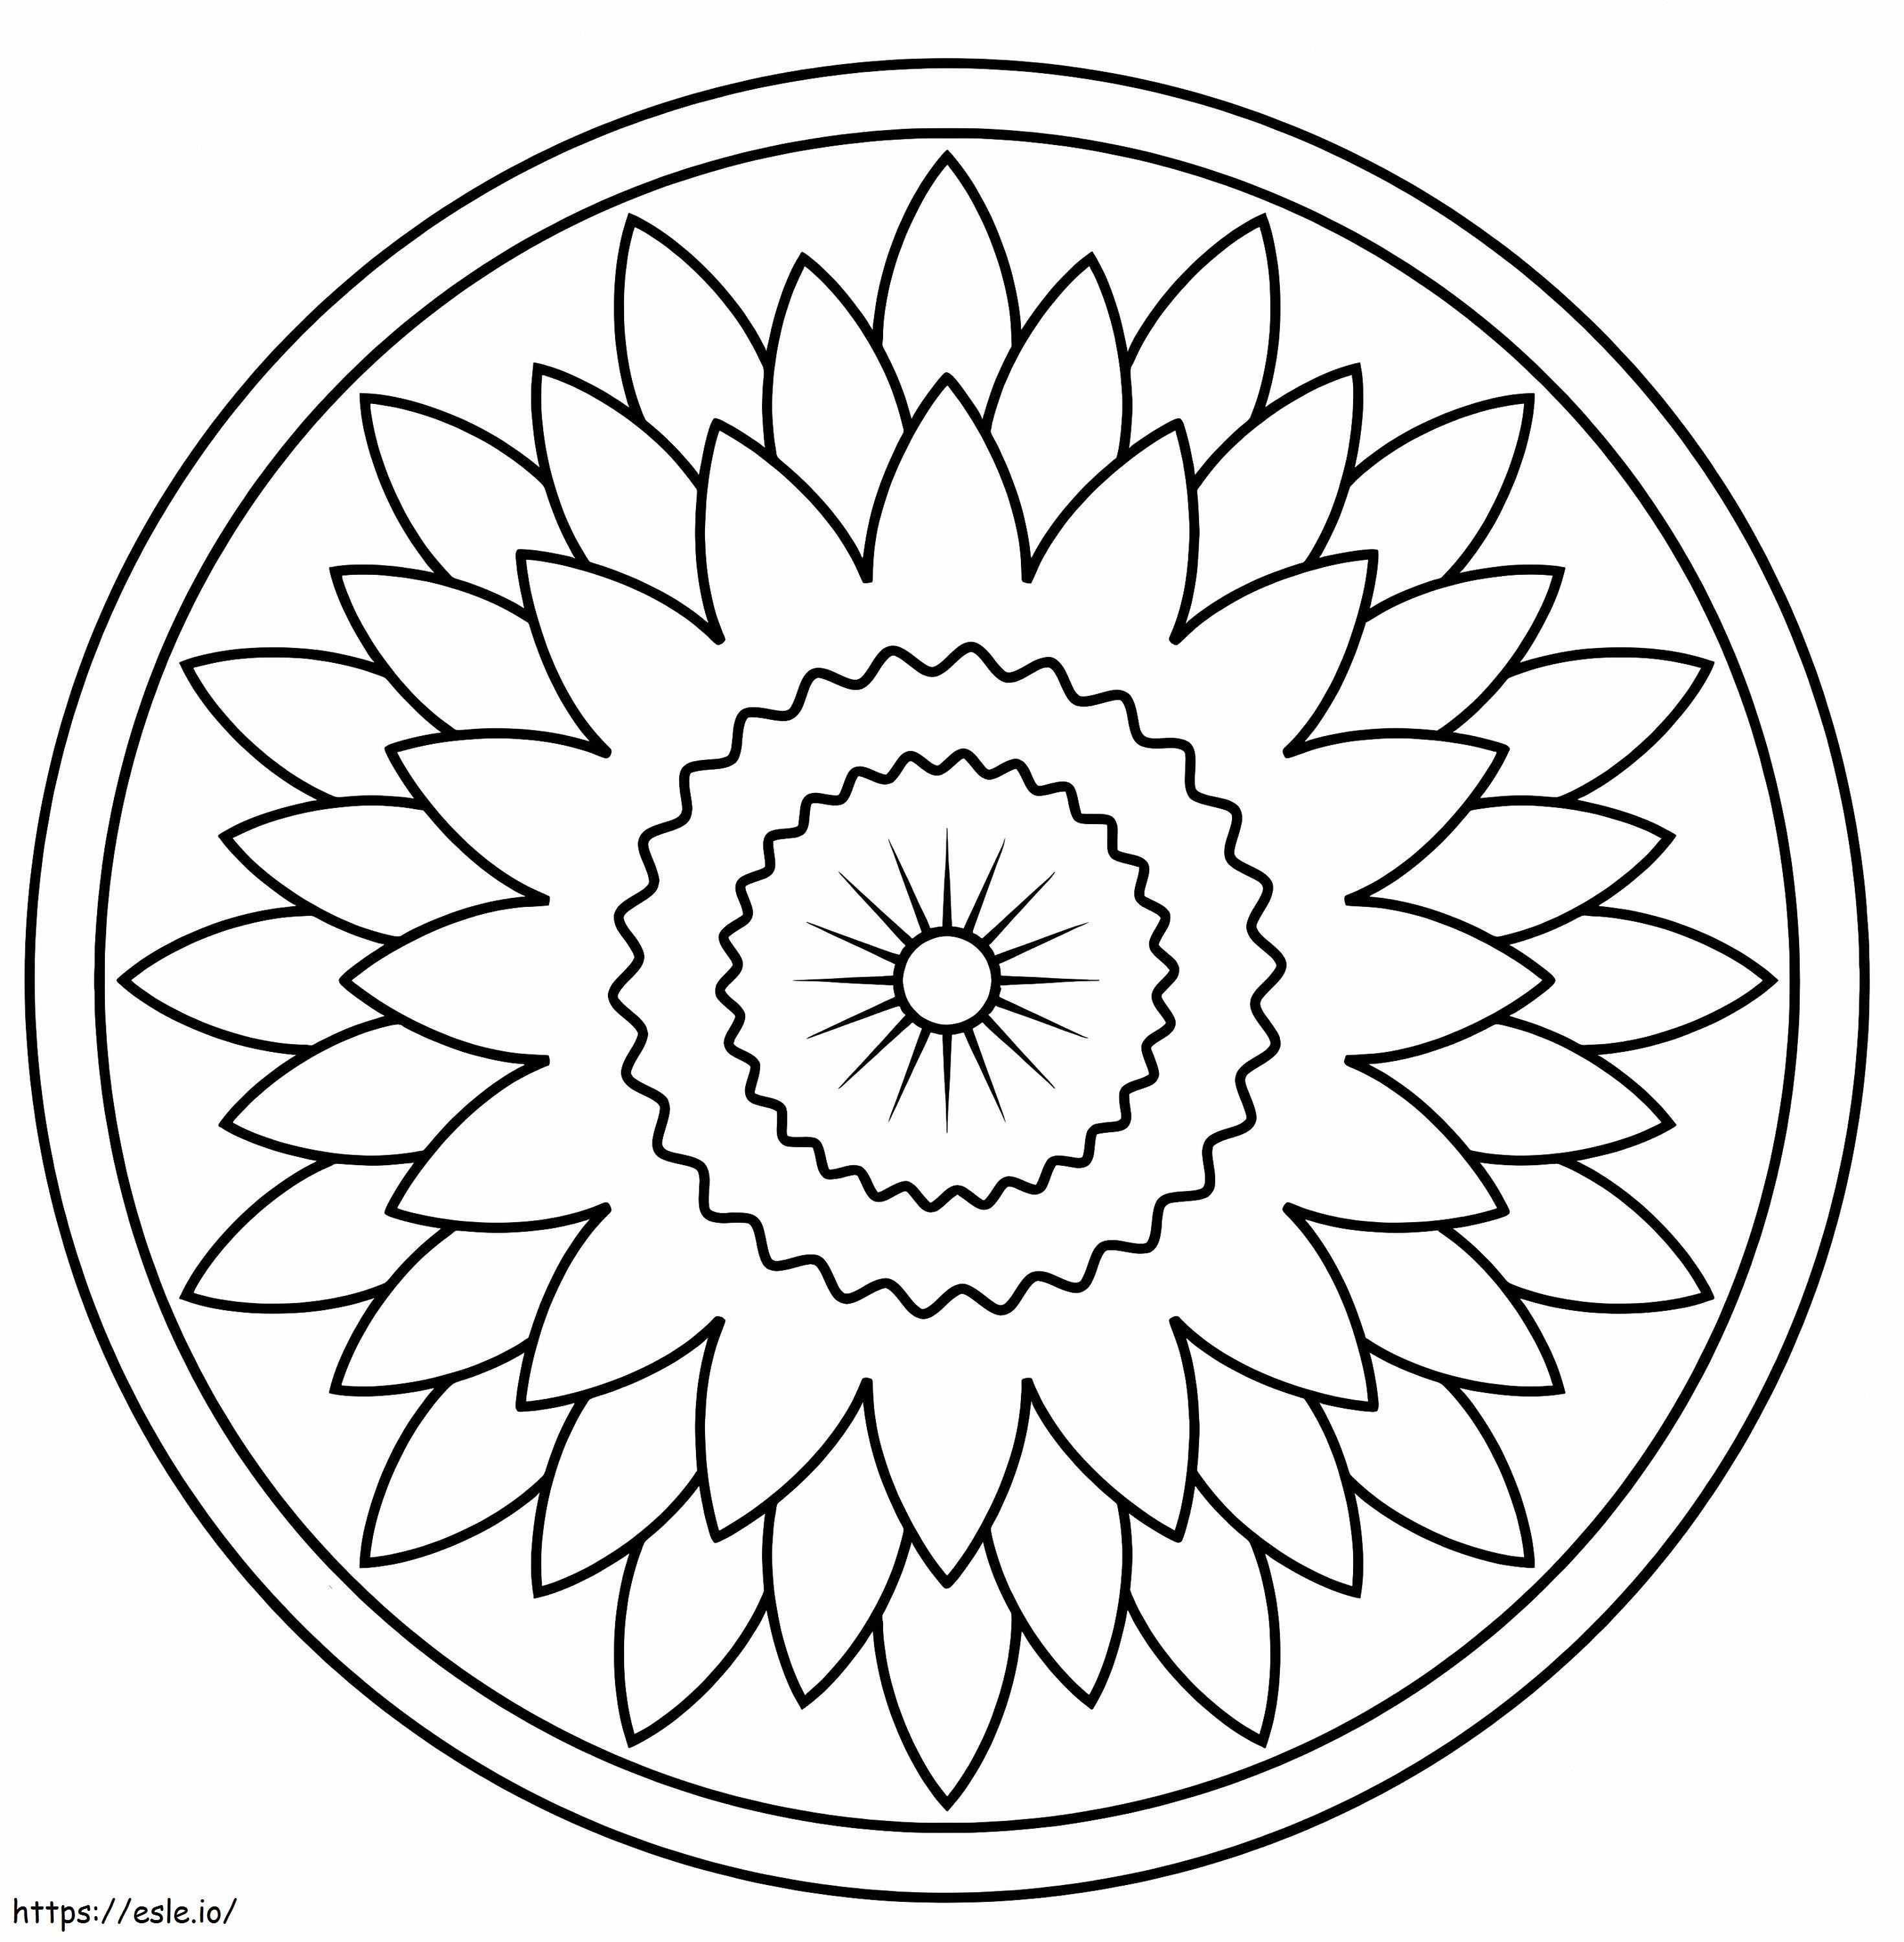 İnanılmaz Çiçek Mandala boyama